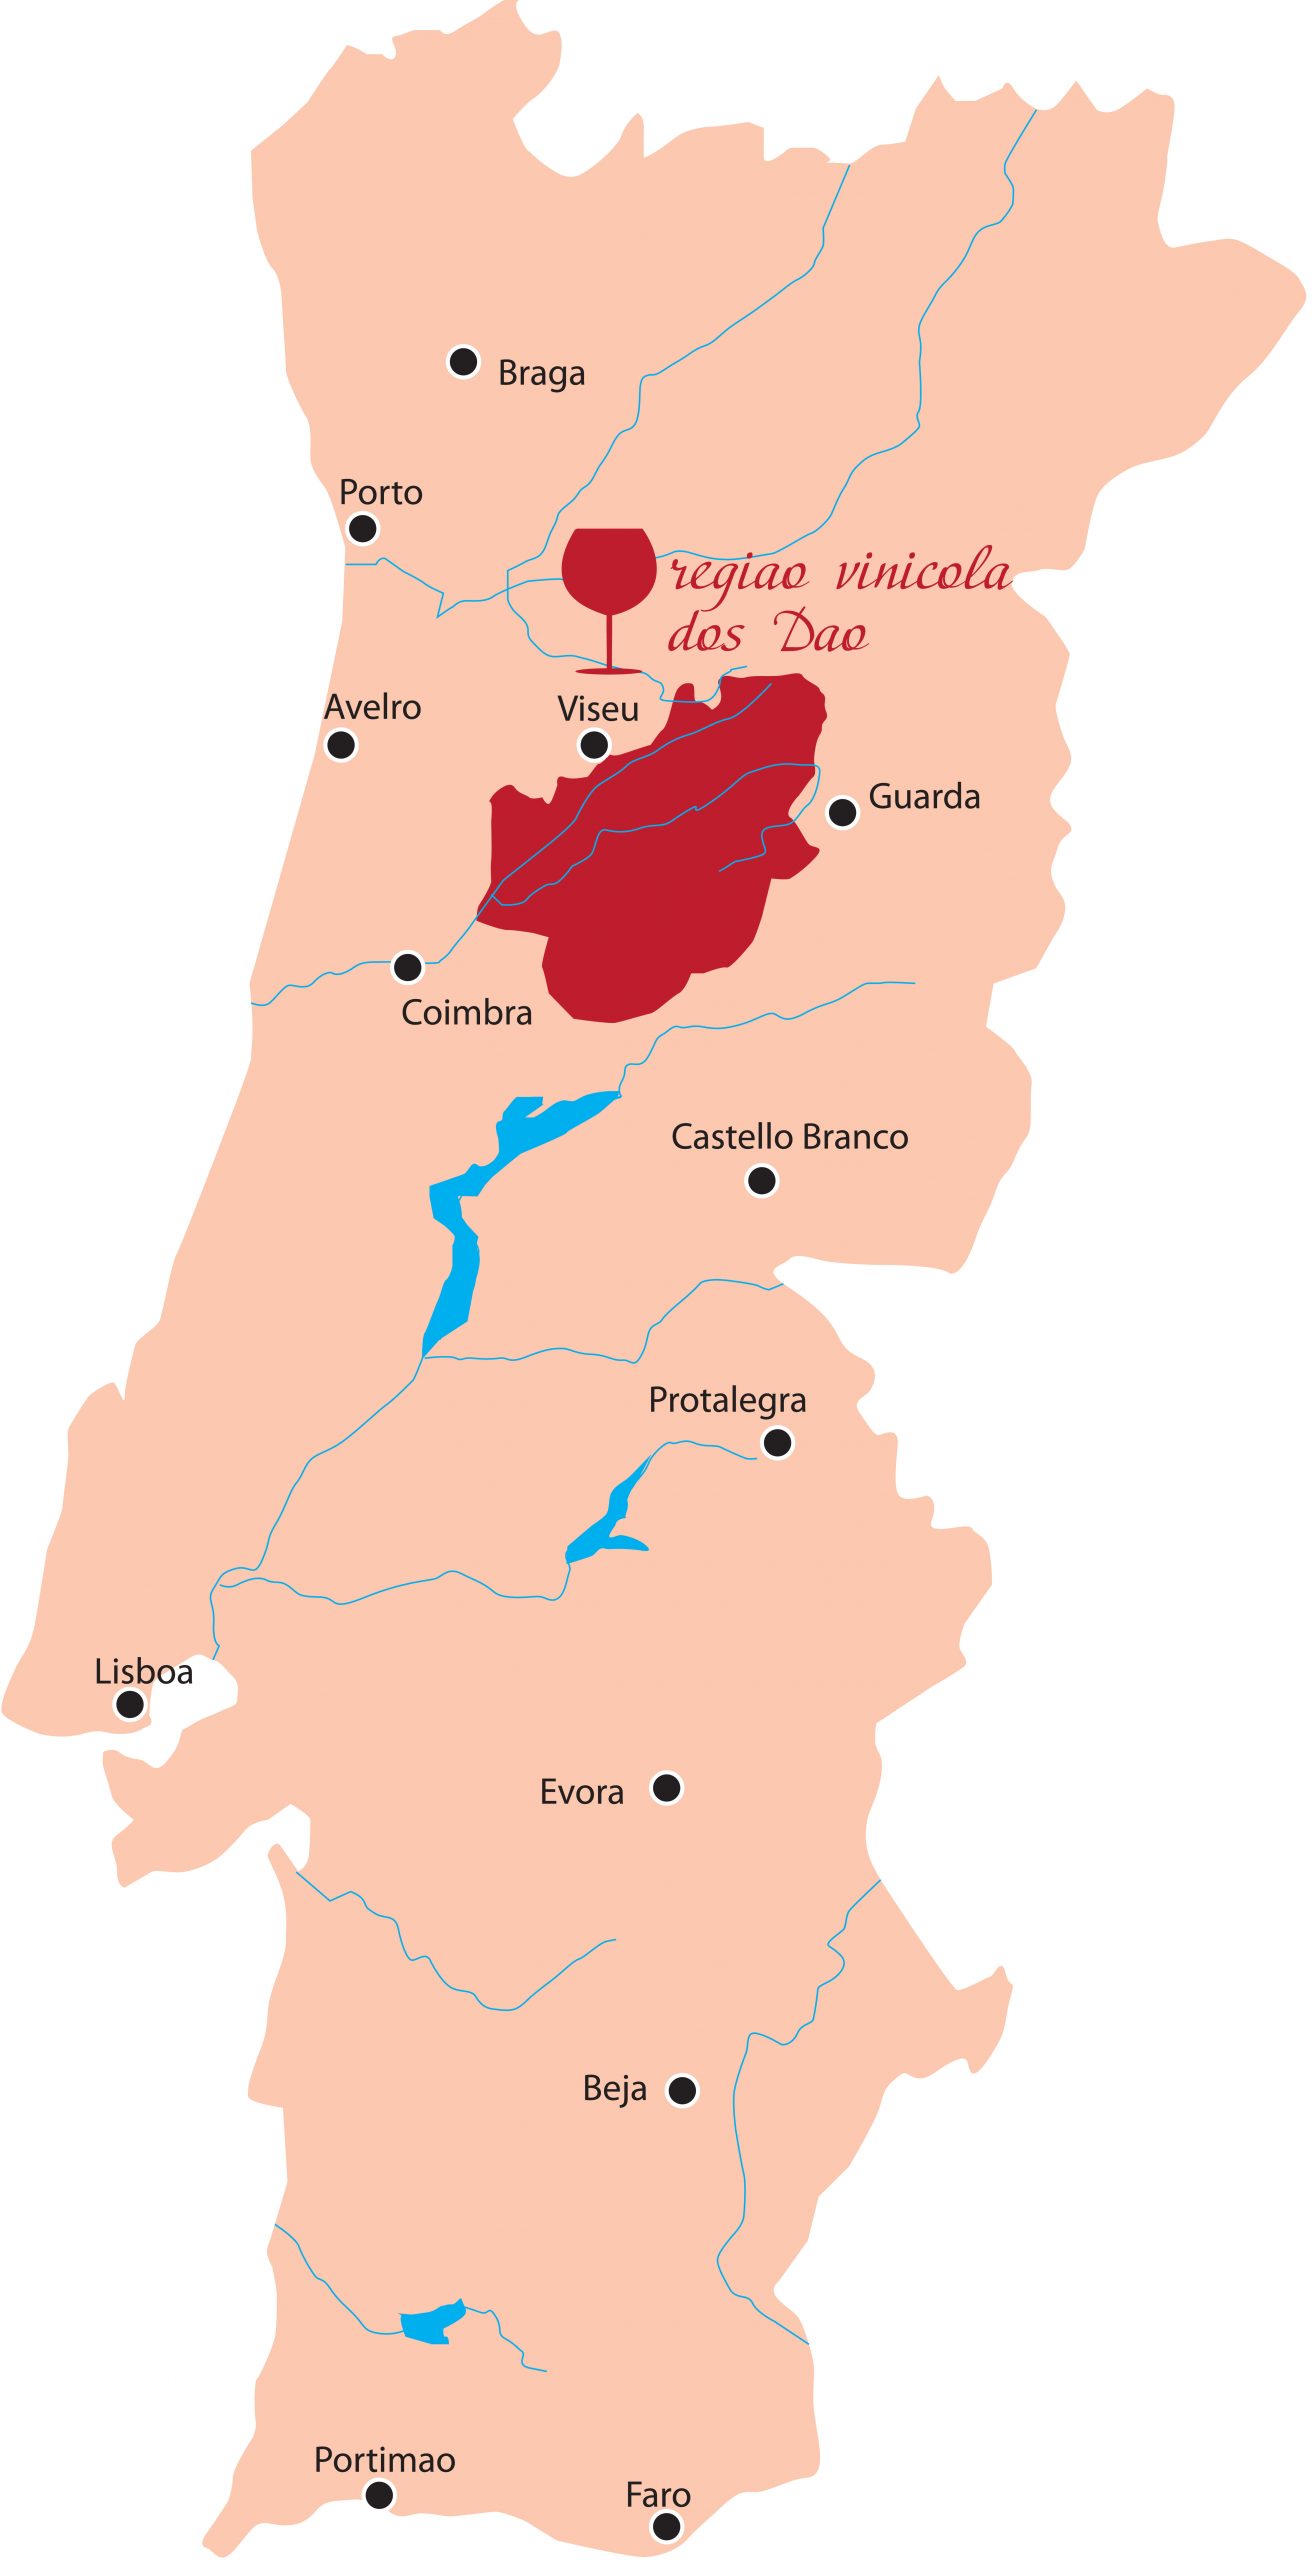 Mapa das regiões produtoras de vinho de Portugal. Em vermelho, está o Dão.